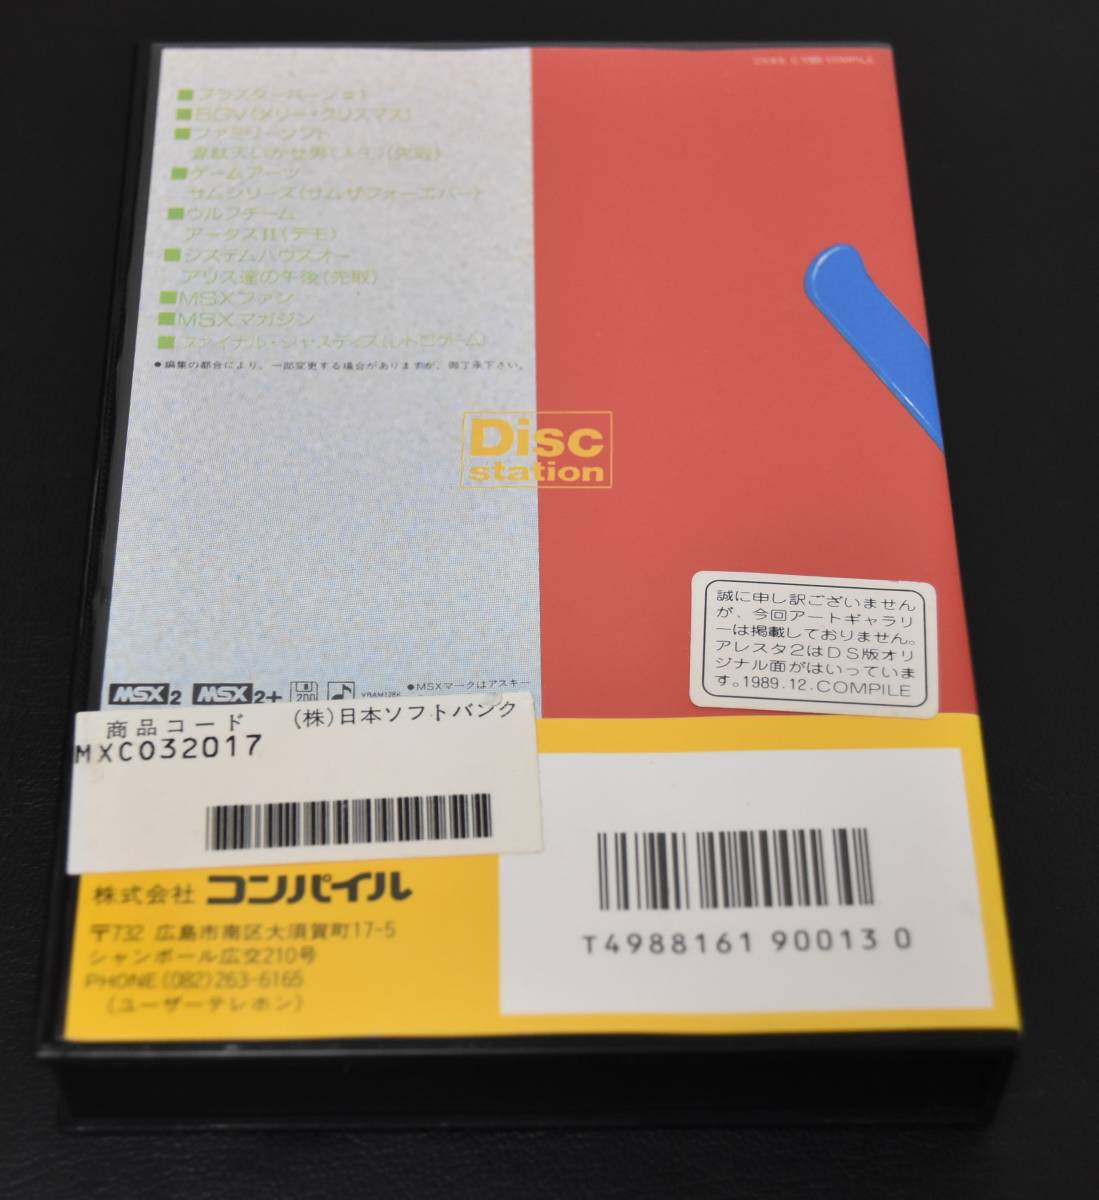 [ used ]MSX2 Disc Station 1 month number #8 disk station 